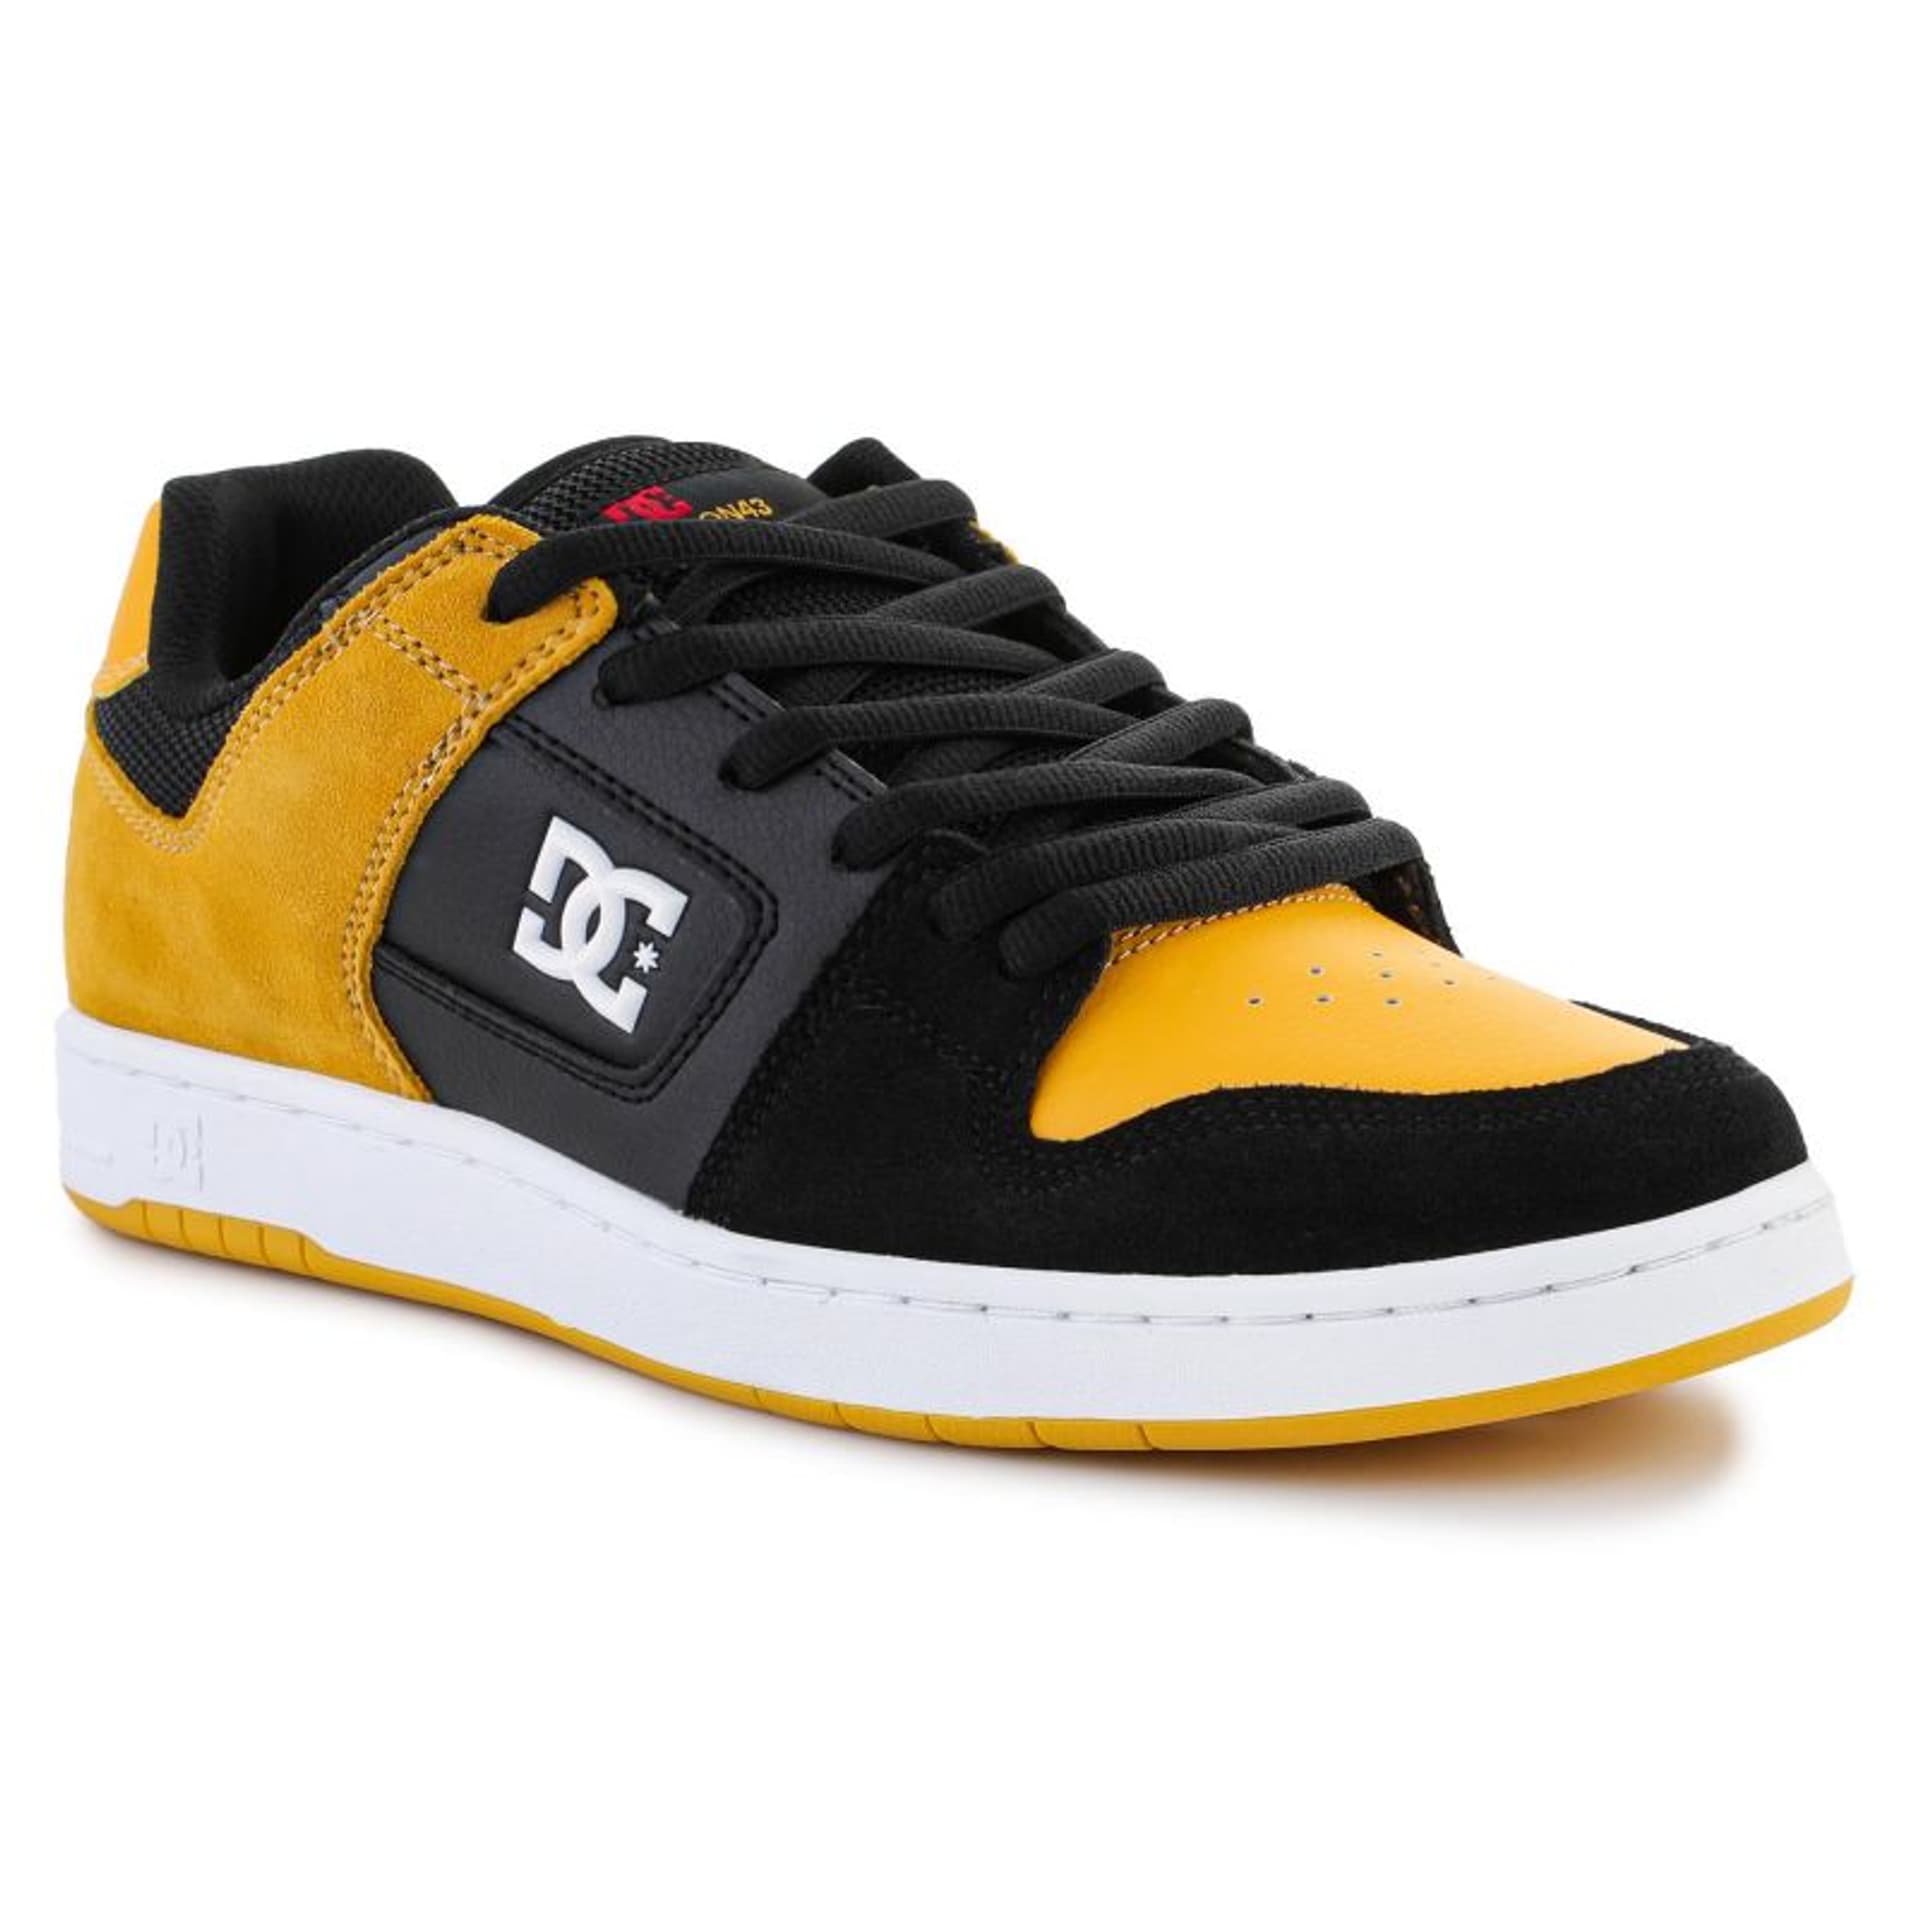 Buty DC Shoes Manteca 4 Skate M 100766 (kolor Czarny. Żółty, rozmiar EU 43)